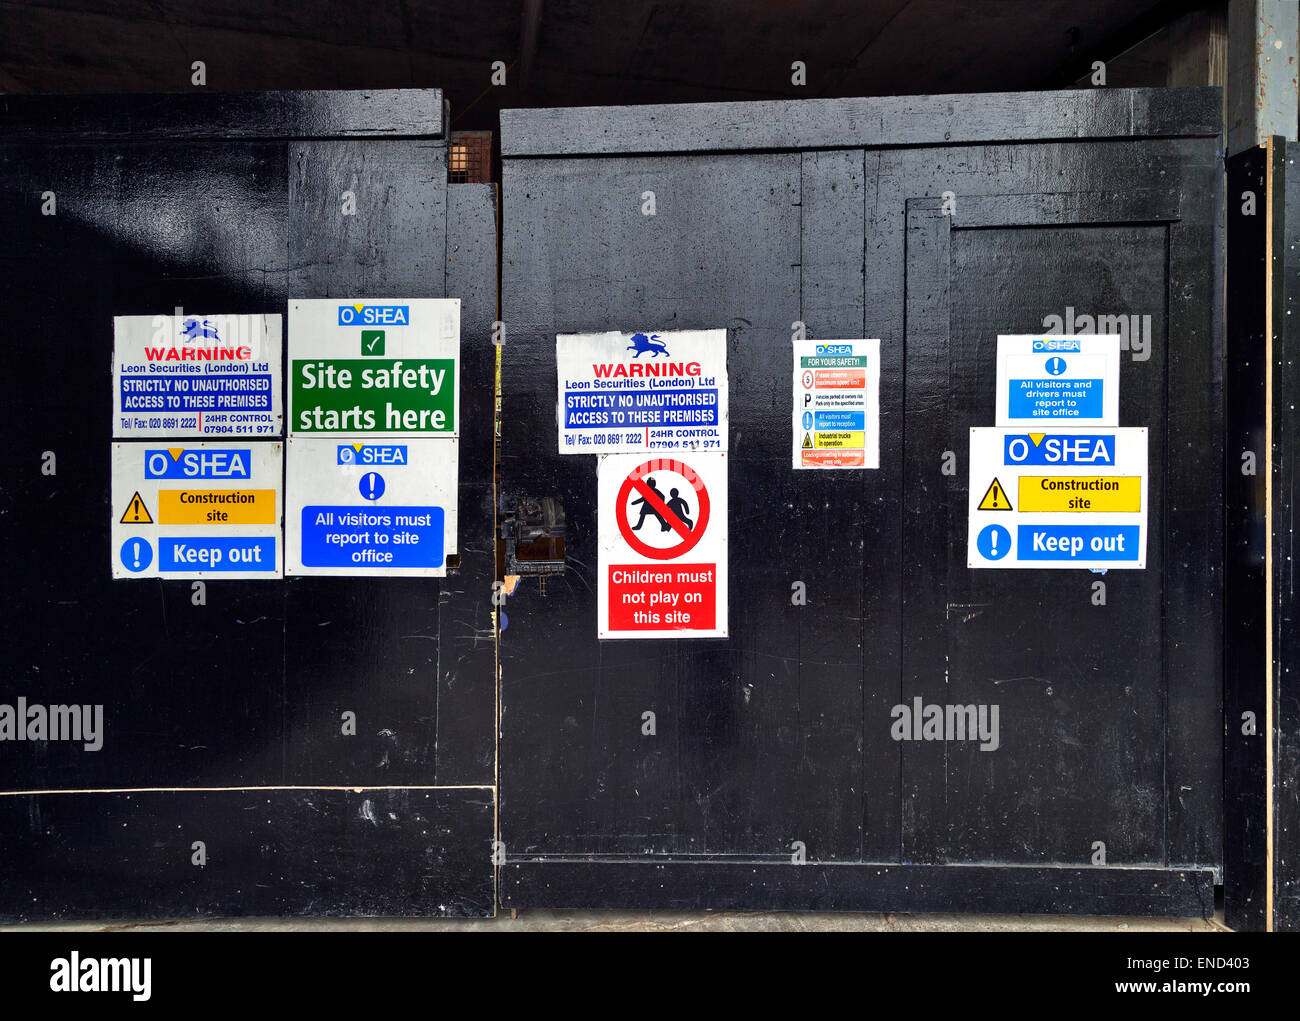 Site de développement de construction Avis d'avertissement, Paddington Street, Marylebone, Londres ; Angleterre ; UK Banque D'Images